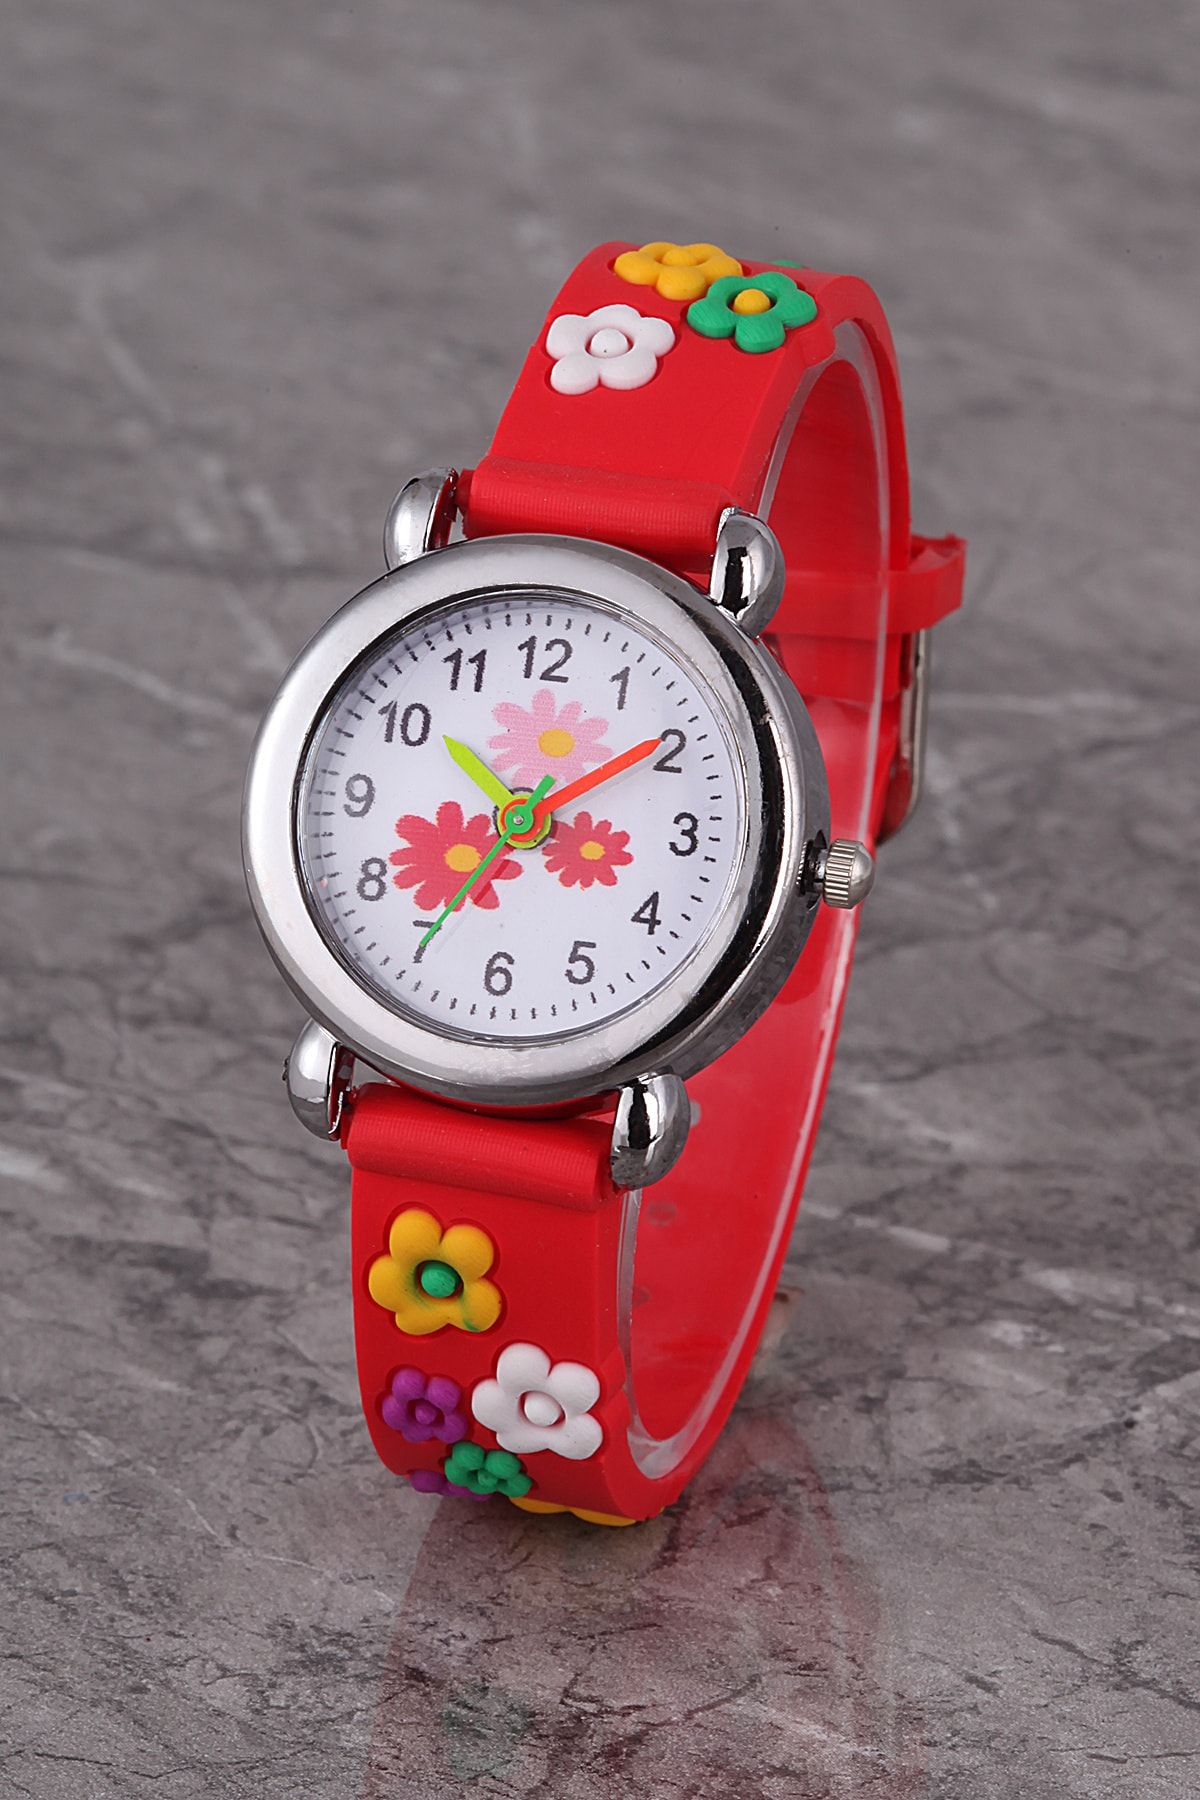 Polo55 Plcs002r02 Çocuk Saat Kırmızı Çiçek Karekterli Çocuk Saati